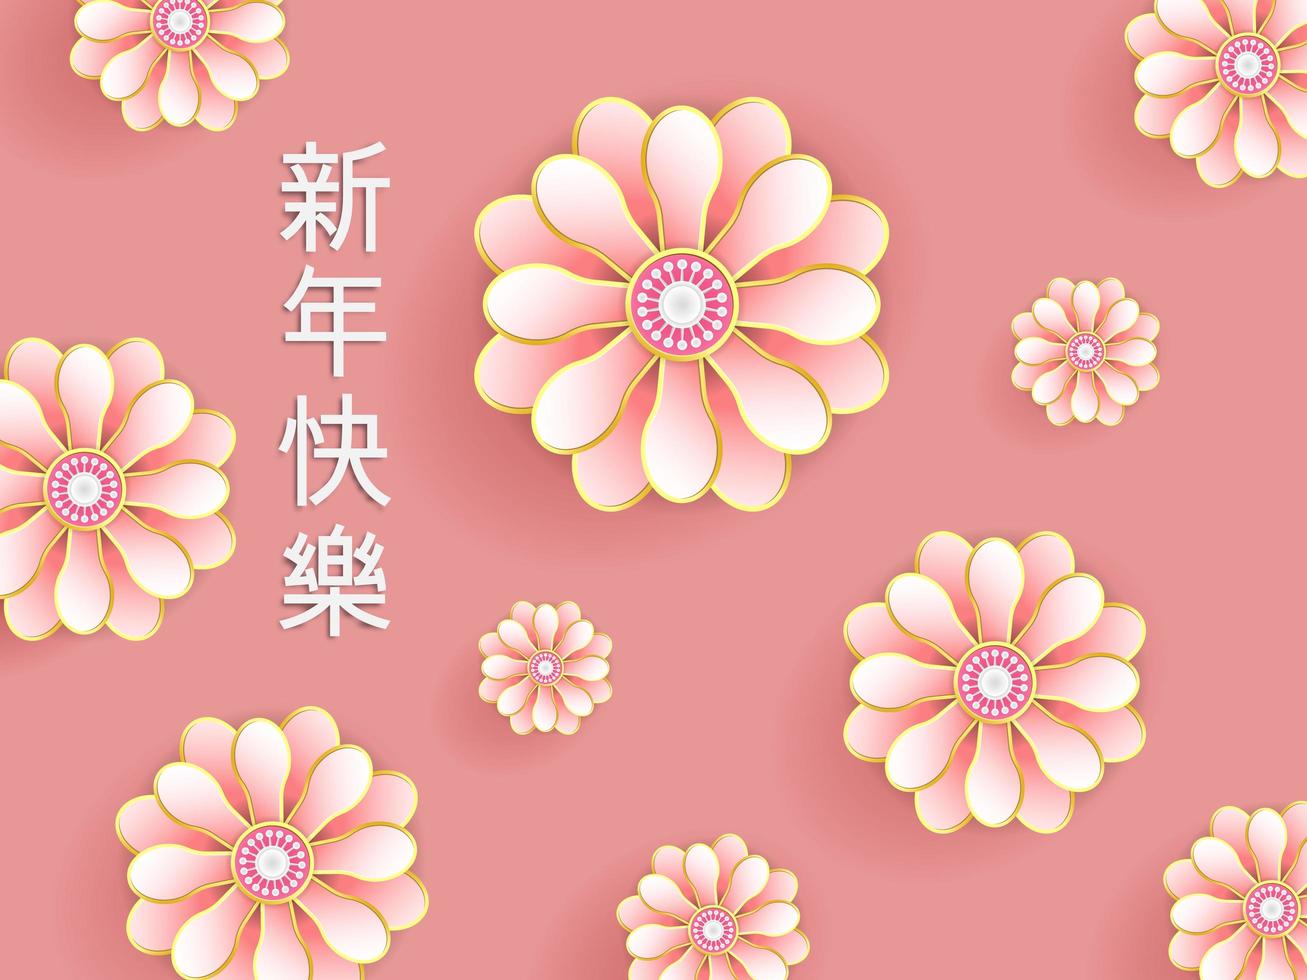 ilustração de flores rosa com caligrafia chinesa vetor